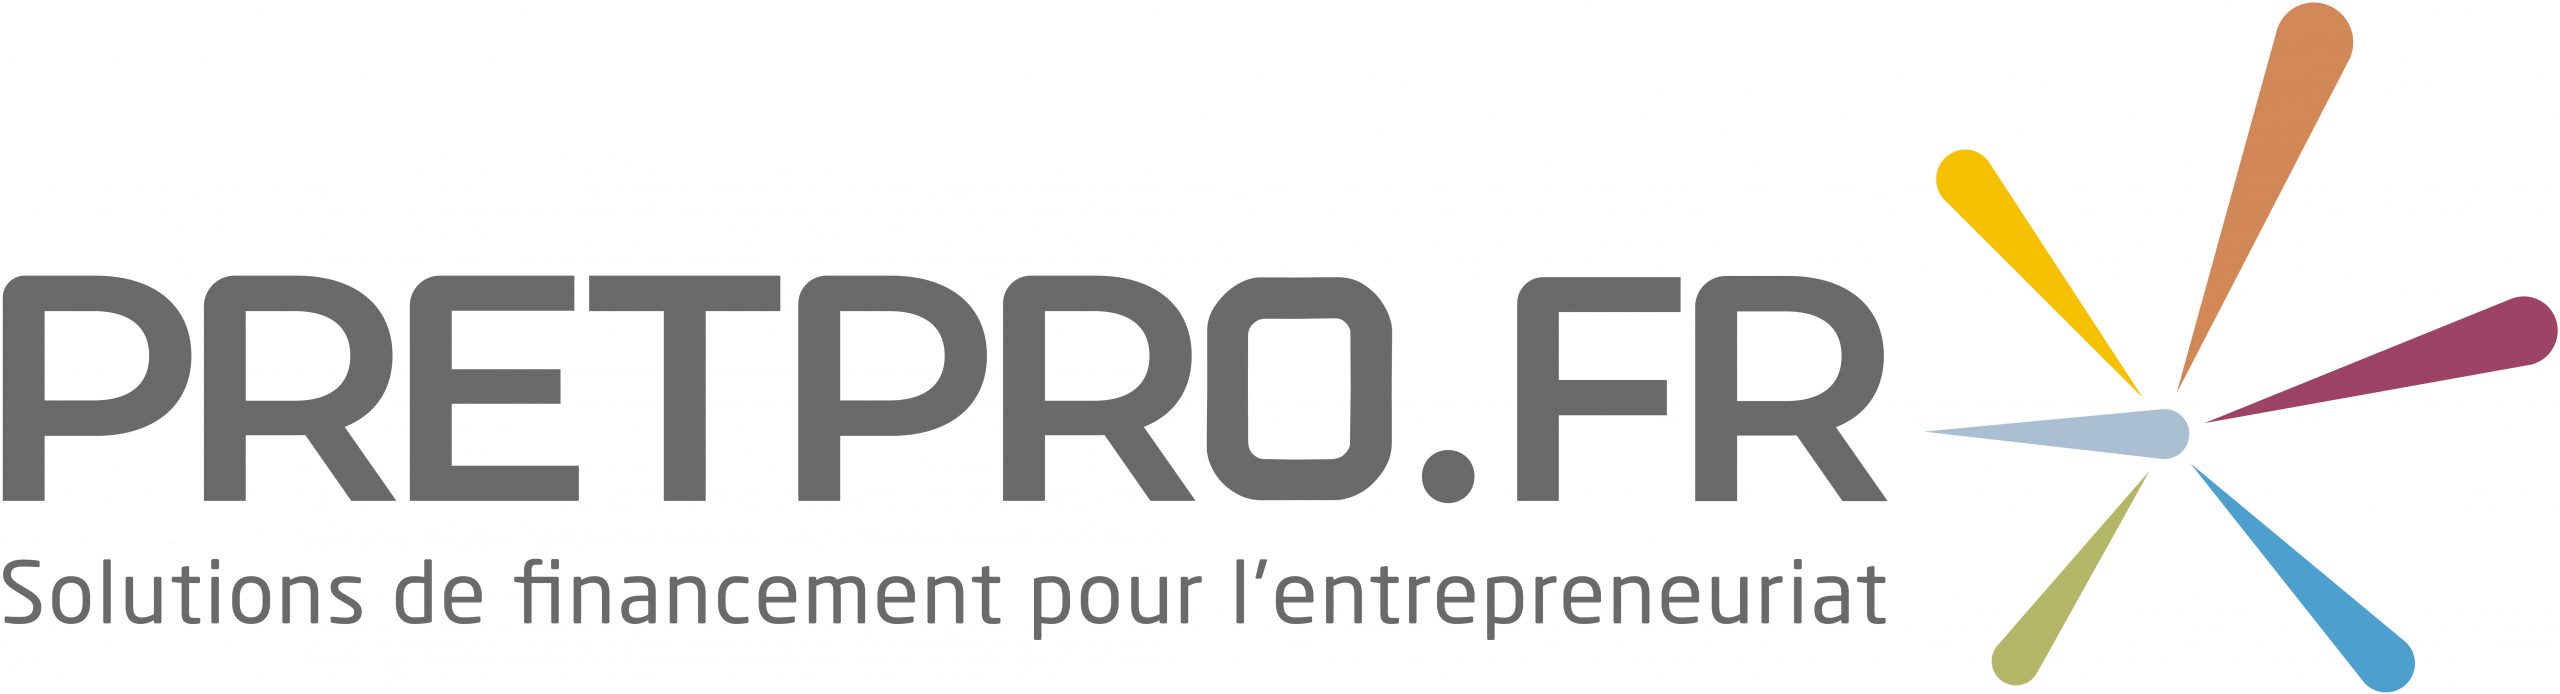 L'aventure Pretpro.fr